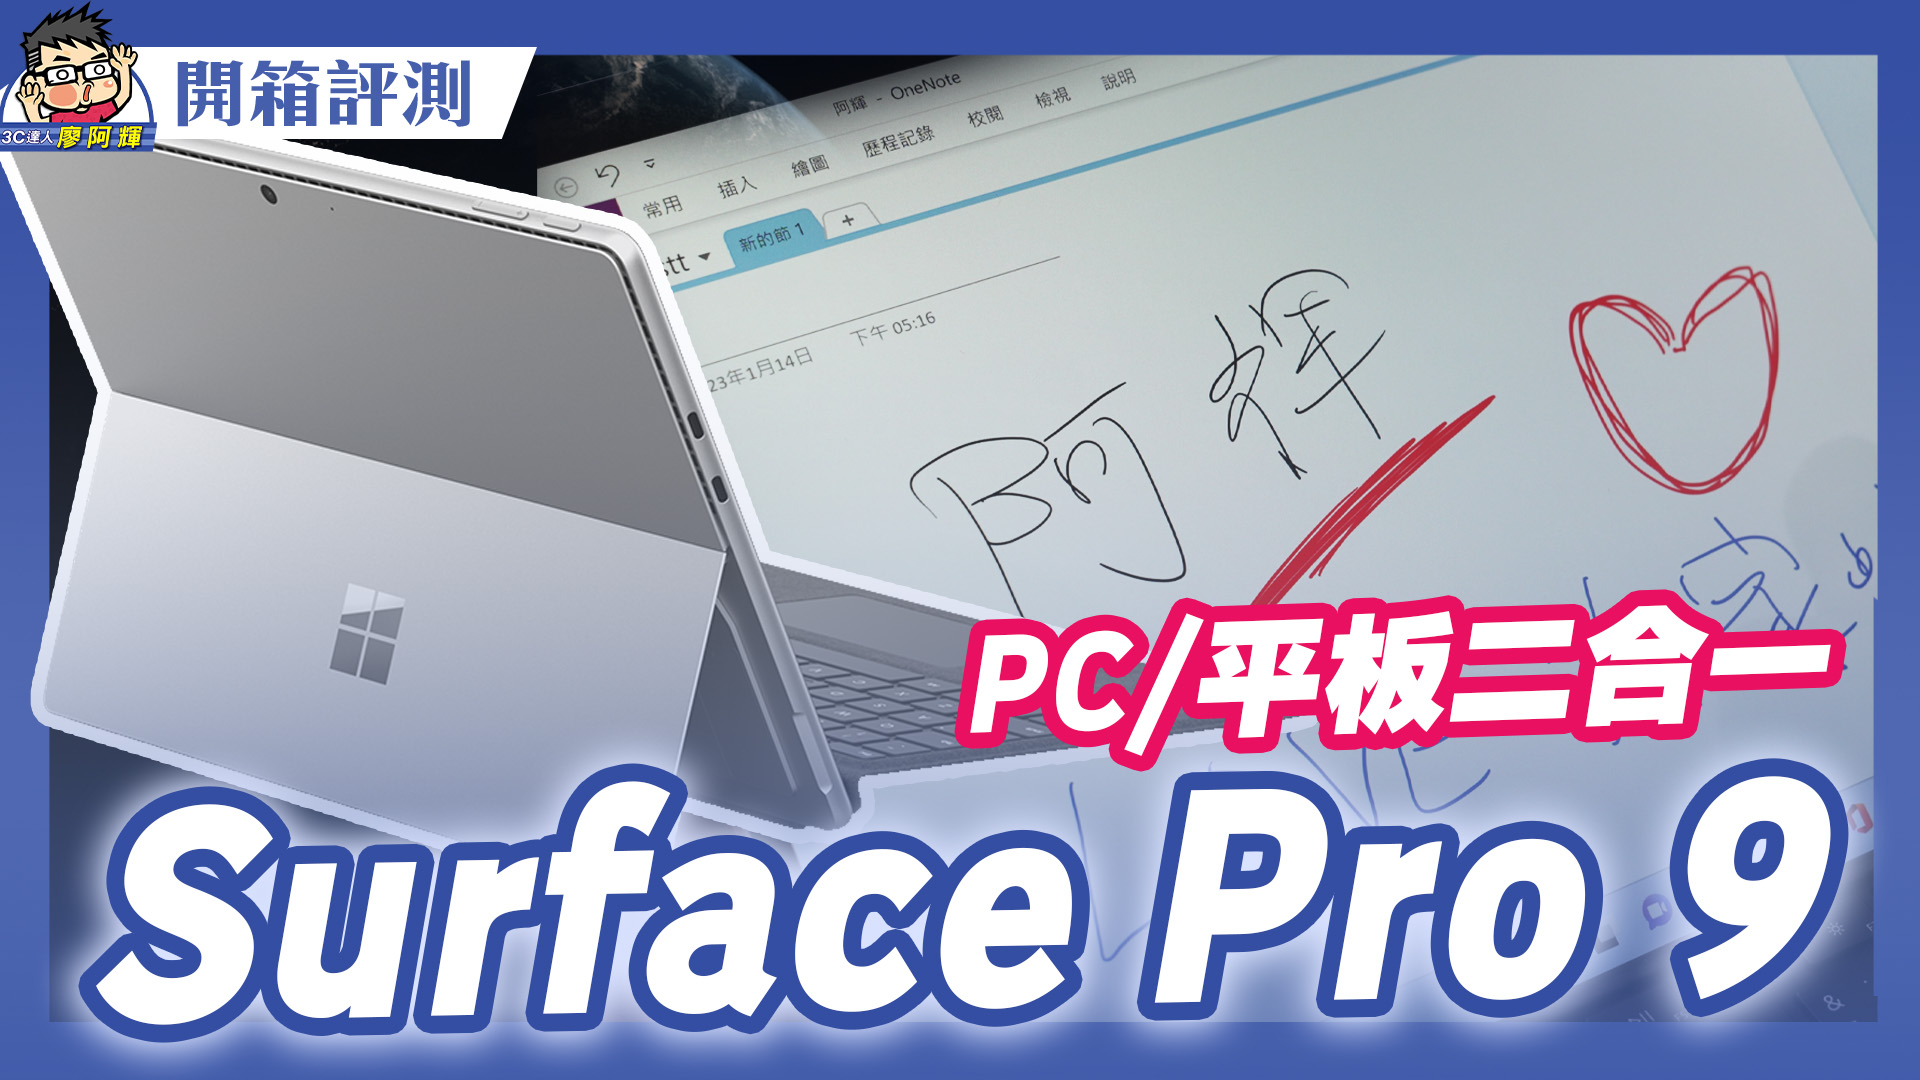 [影片] 微軟 Surface Pro 9 開箱～ 最完美平板 + 電腦二合一選擇 @3C 達人廖阿輝